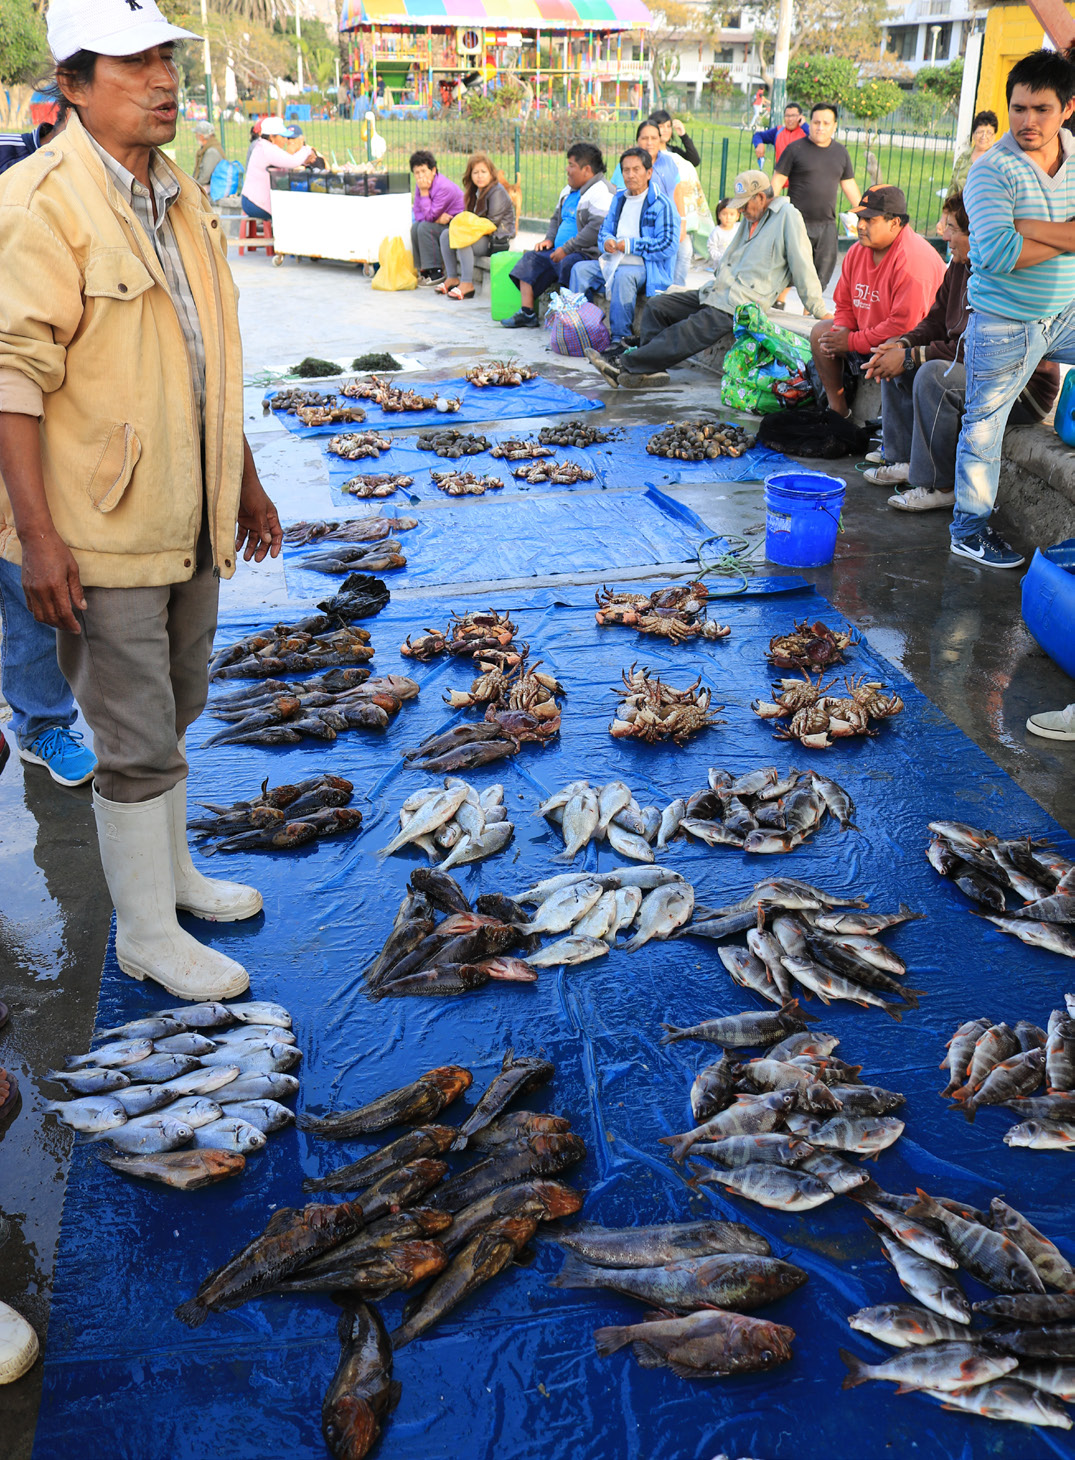 سمكة صياد اليوم على رصيف للبيع، بيرو. الصورة © جيريمي رود / TNC